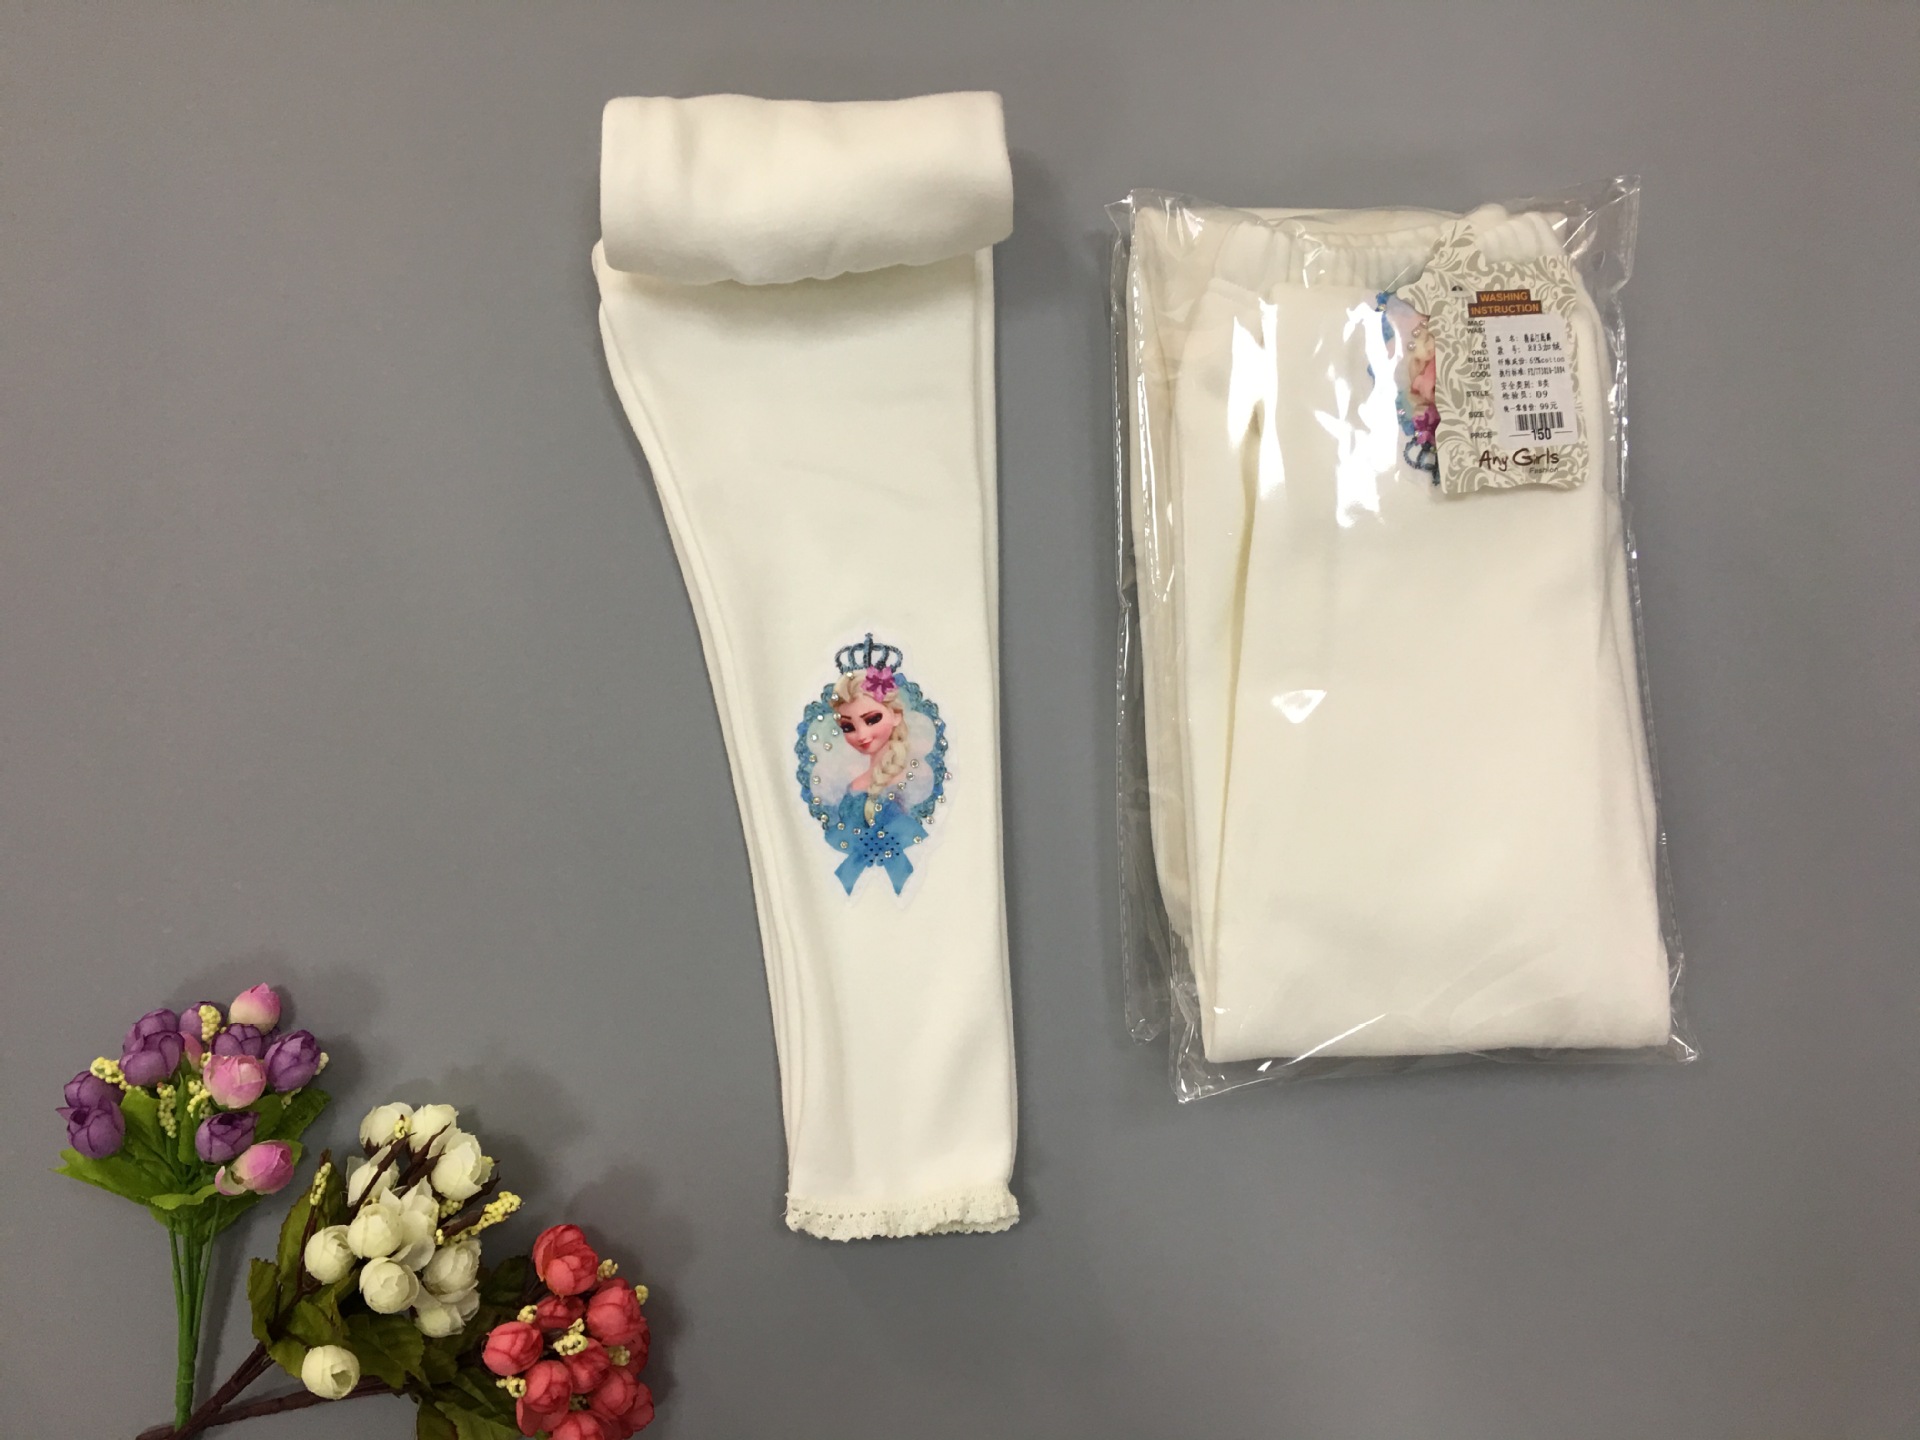 F68132-1 White velvet girls leggings tights Korea style children s clothes